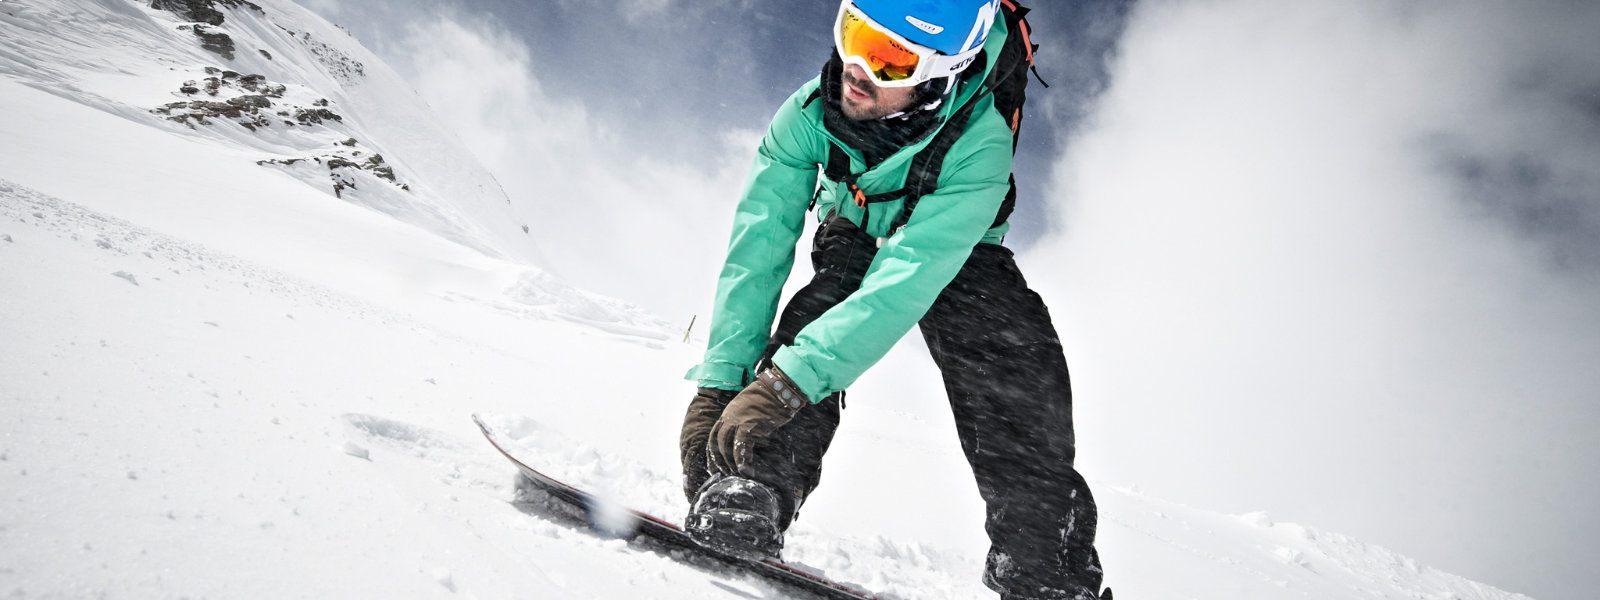 Leichte Froschperspektive: Snowboarder in grüner Jacke befestigt mit seinen Händen eine Bindung und blickt nach unten	 während um ihn herum viel Schnee aufgewirbelt wird 